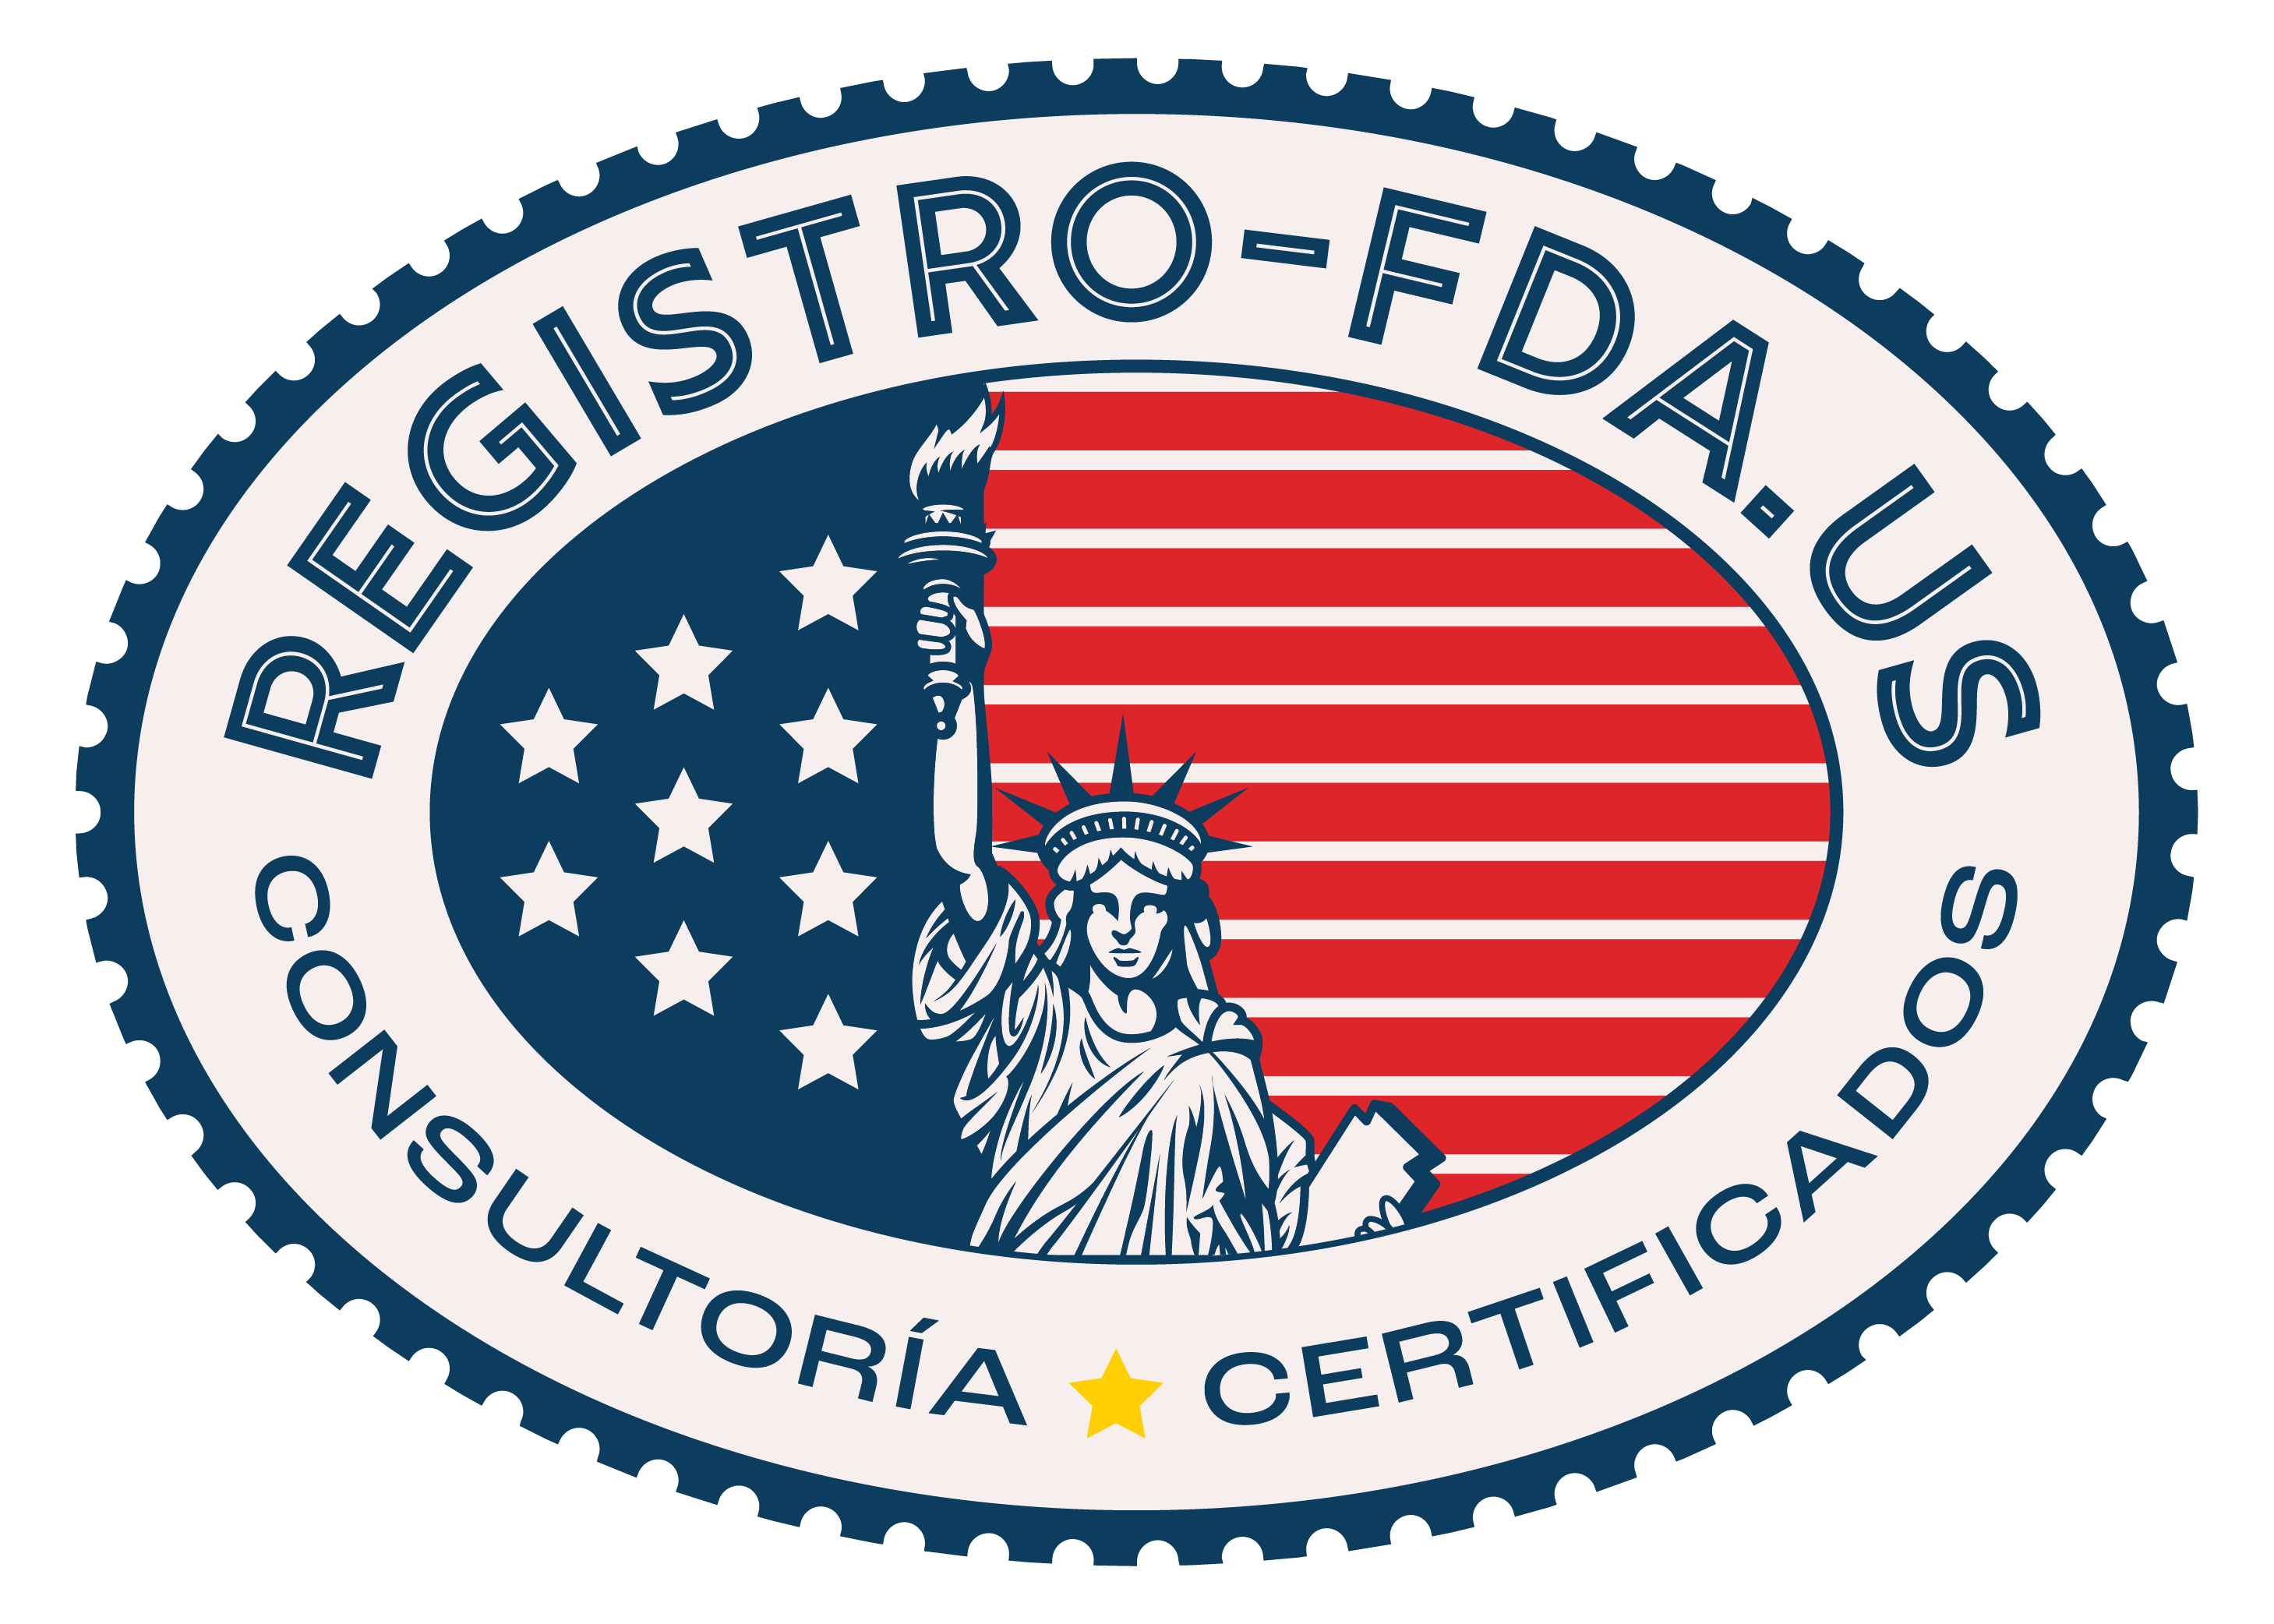 registrate fda, registro fda, registro en estados unidos